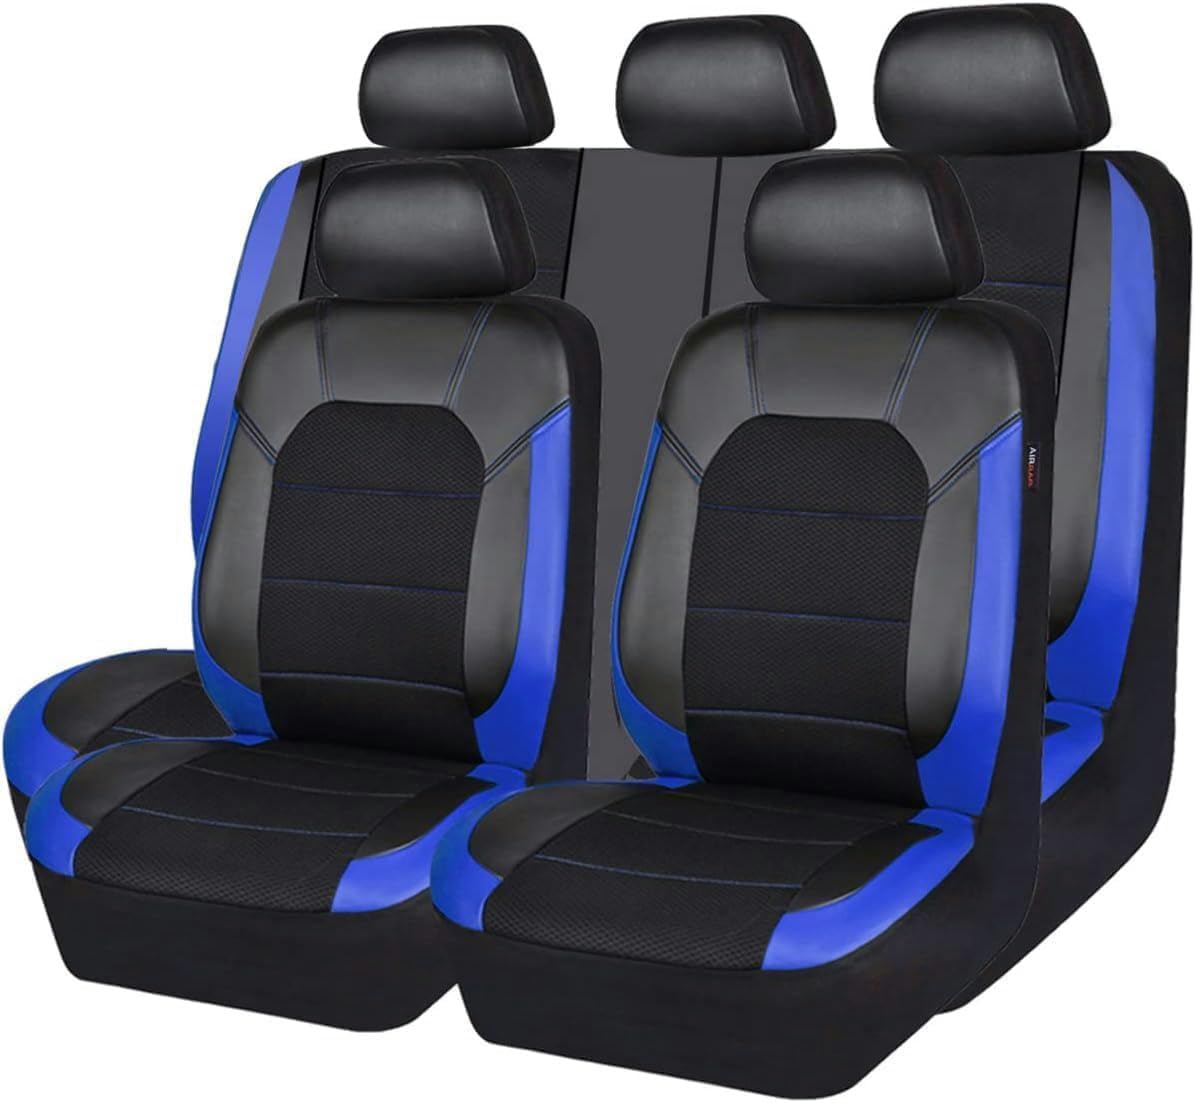 SPEESY Auto Leder Sitzbezüge für Peugeot 206Cc 308Sw 607307 307Cc 307Sw 2008 3008 4008 5008，5-Sitze Allwetter wasserdichtes-blau von SPEESY